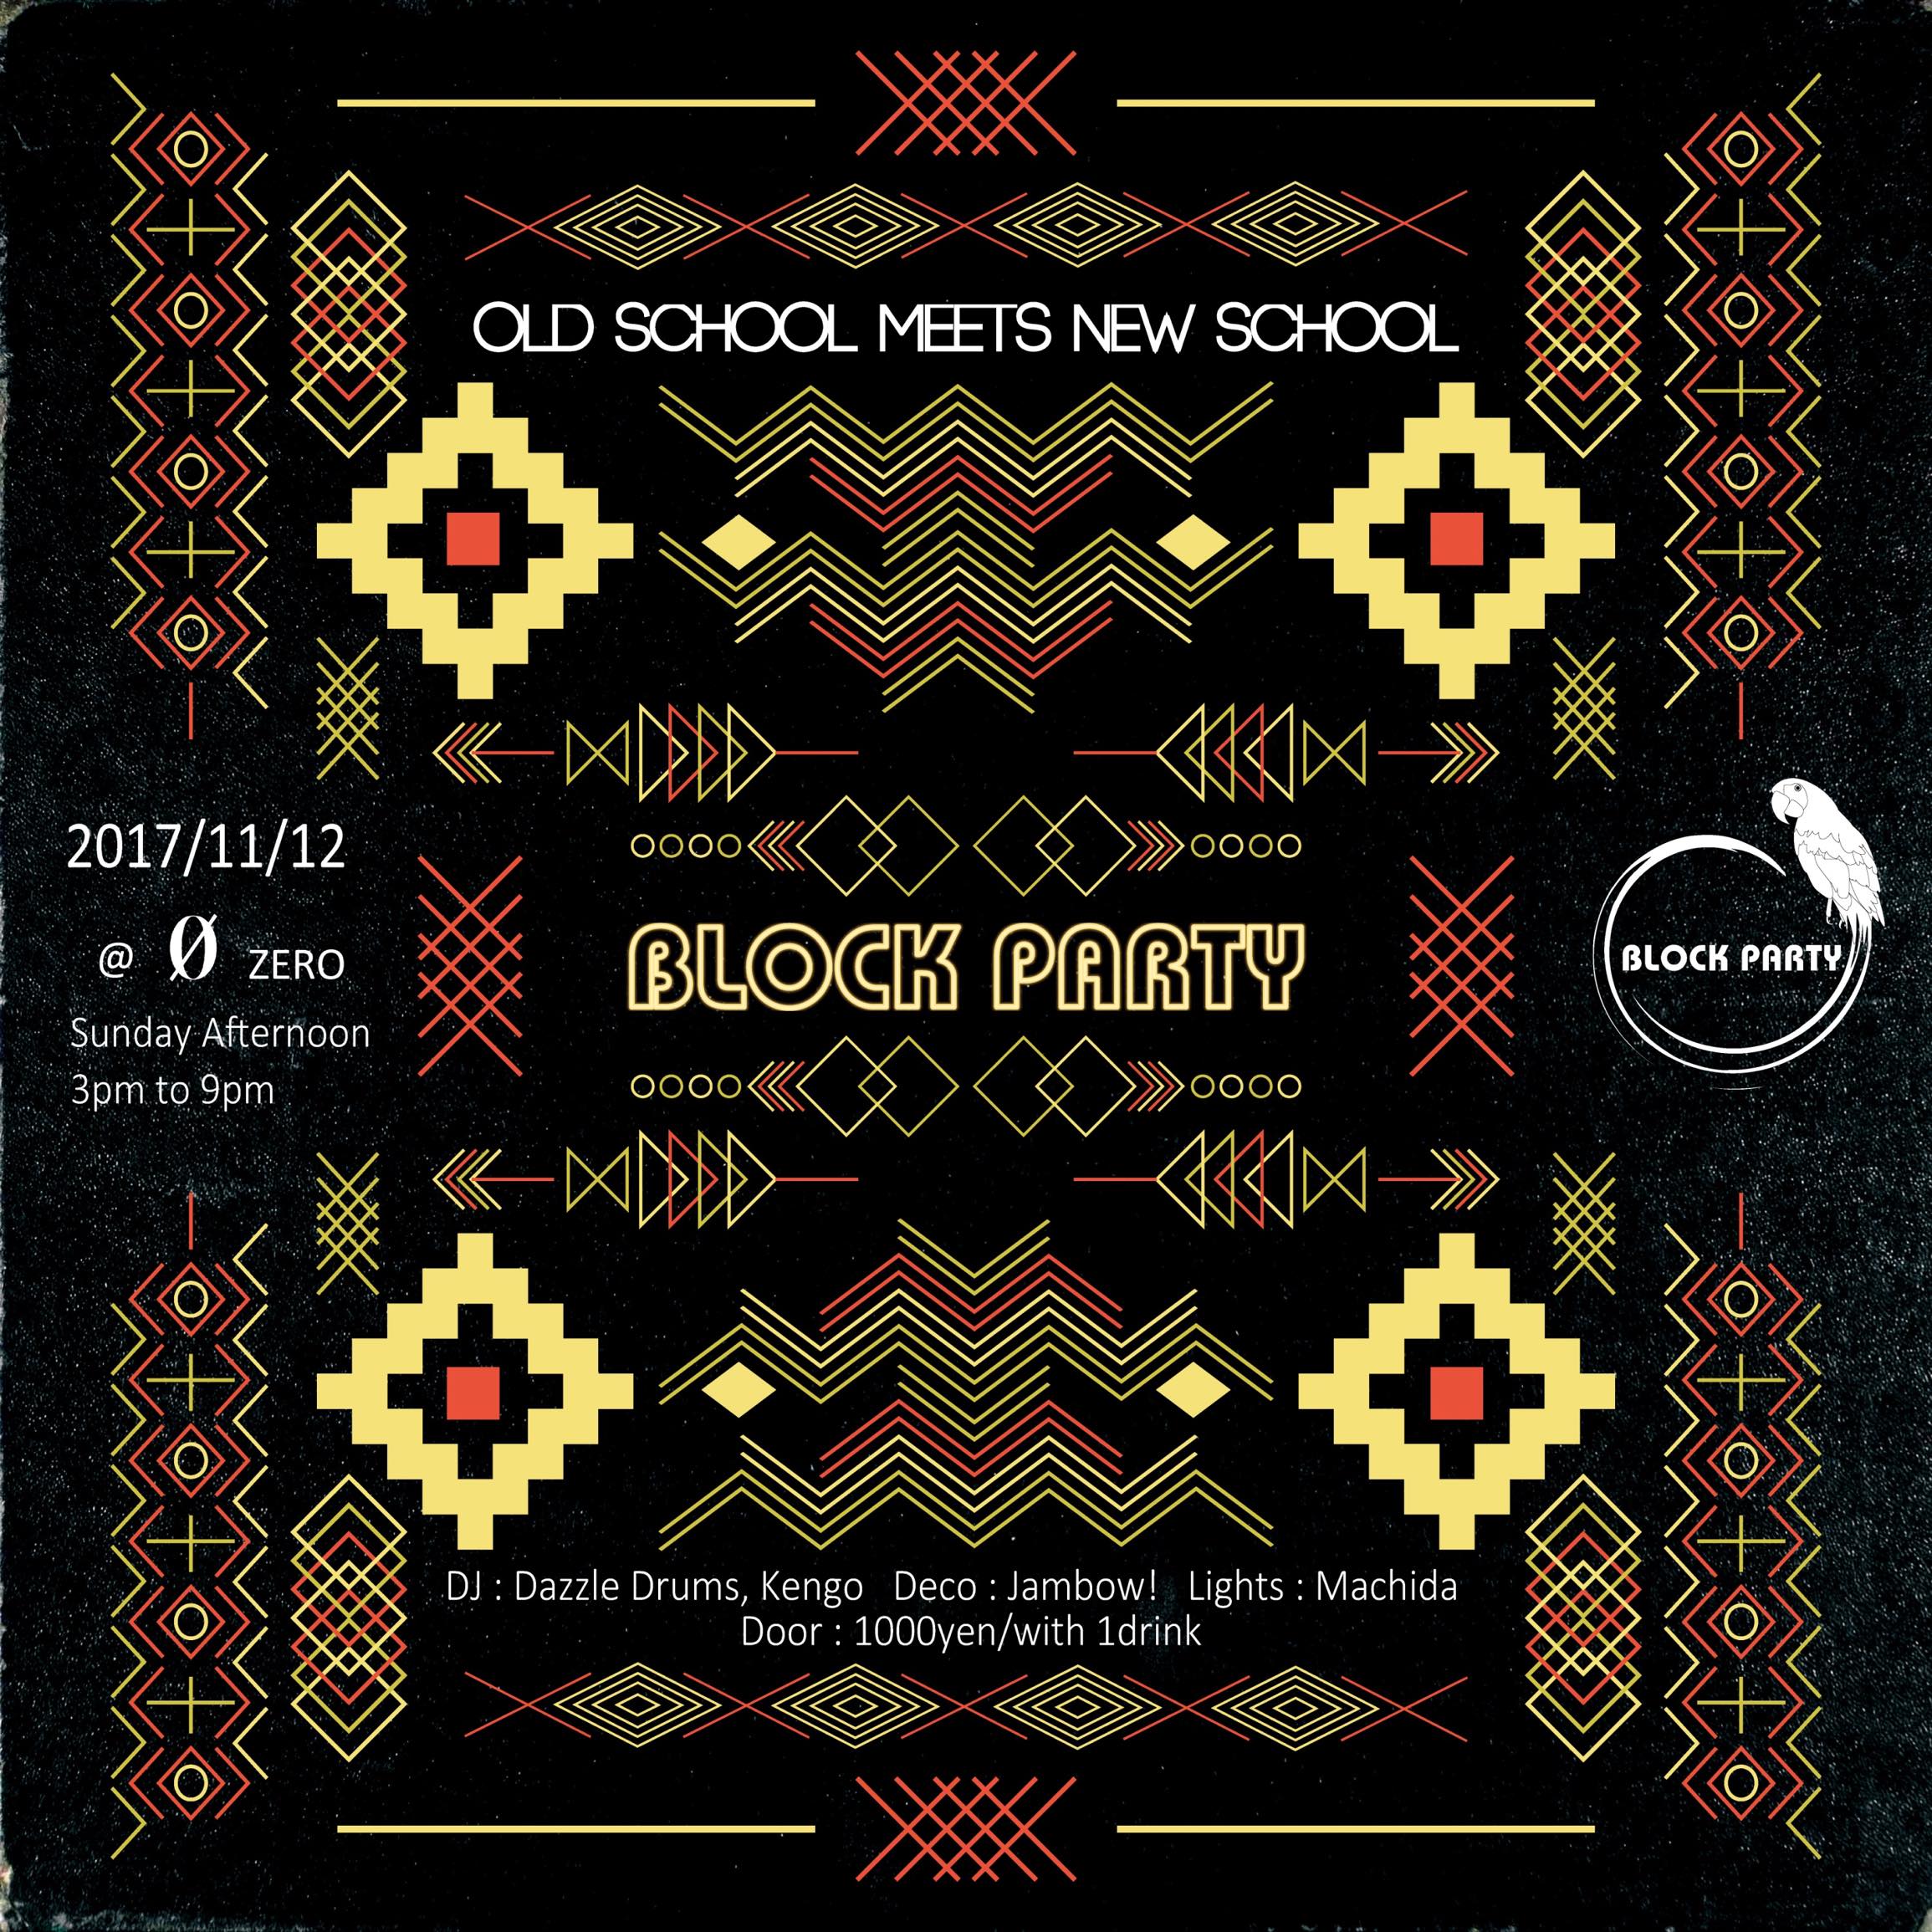 Block Party “Old School Meets New School”